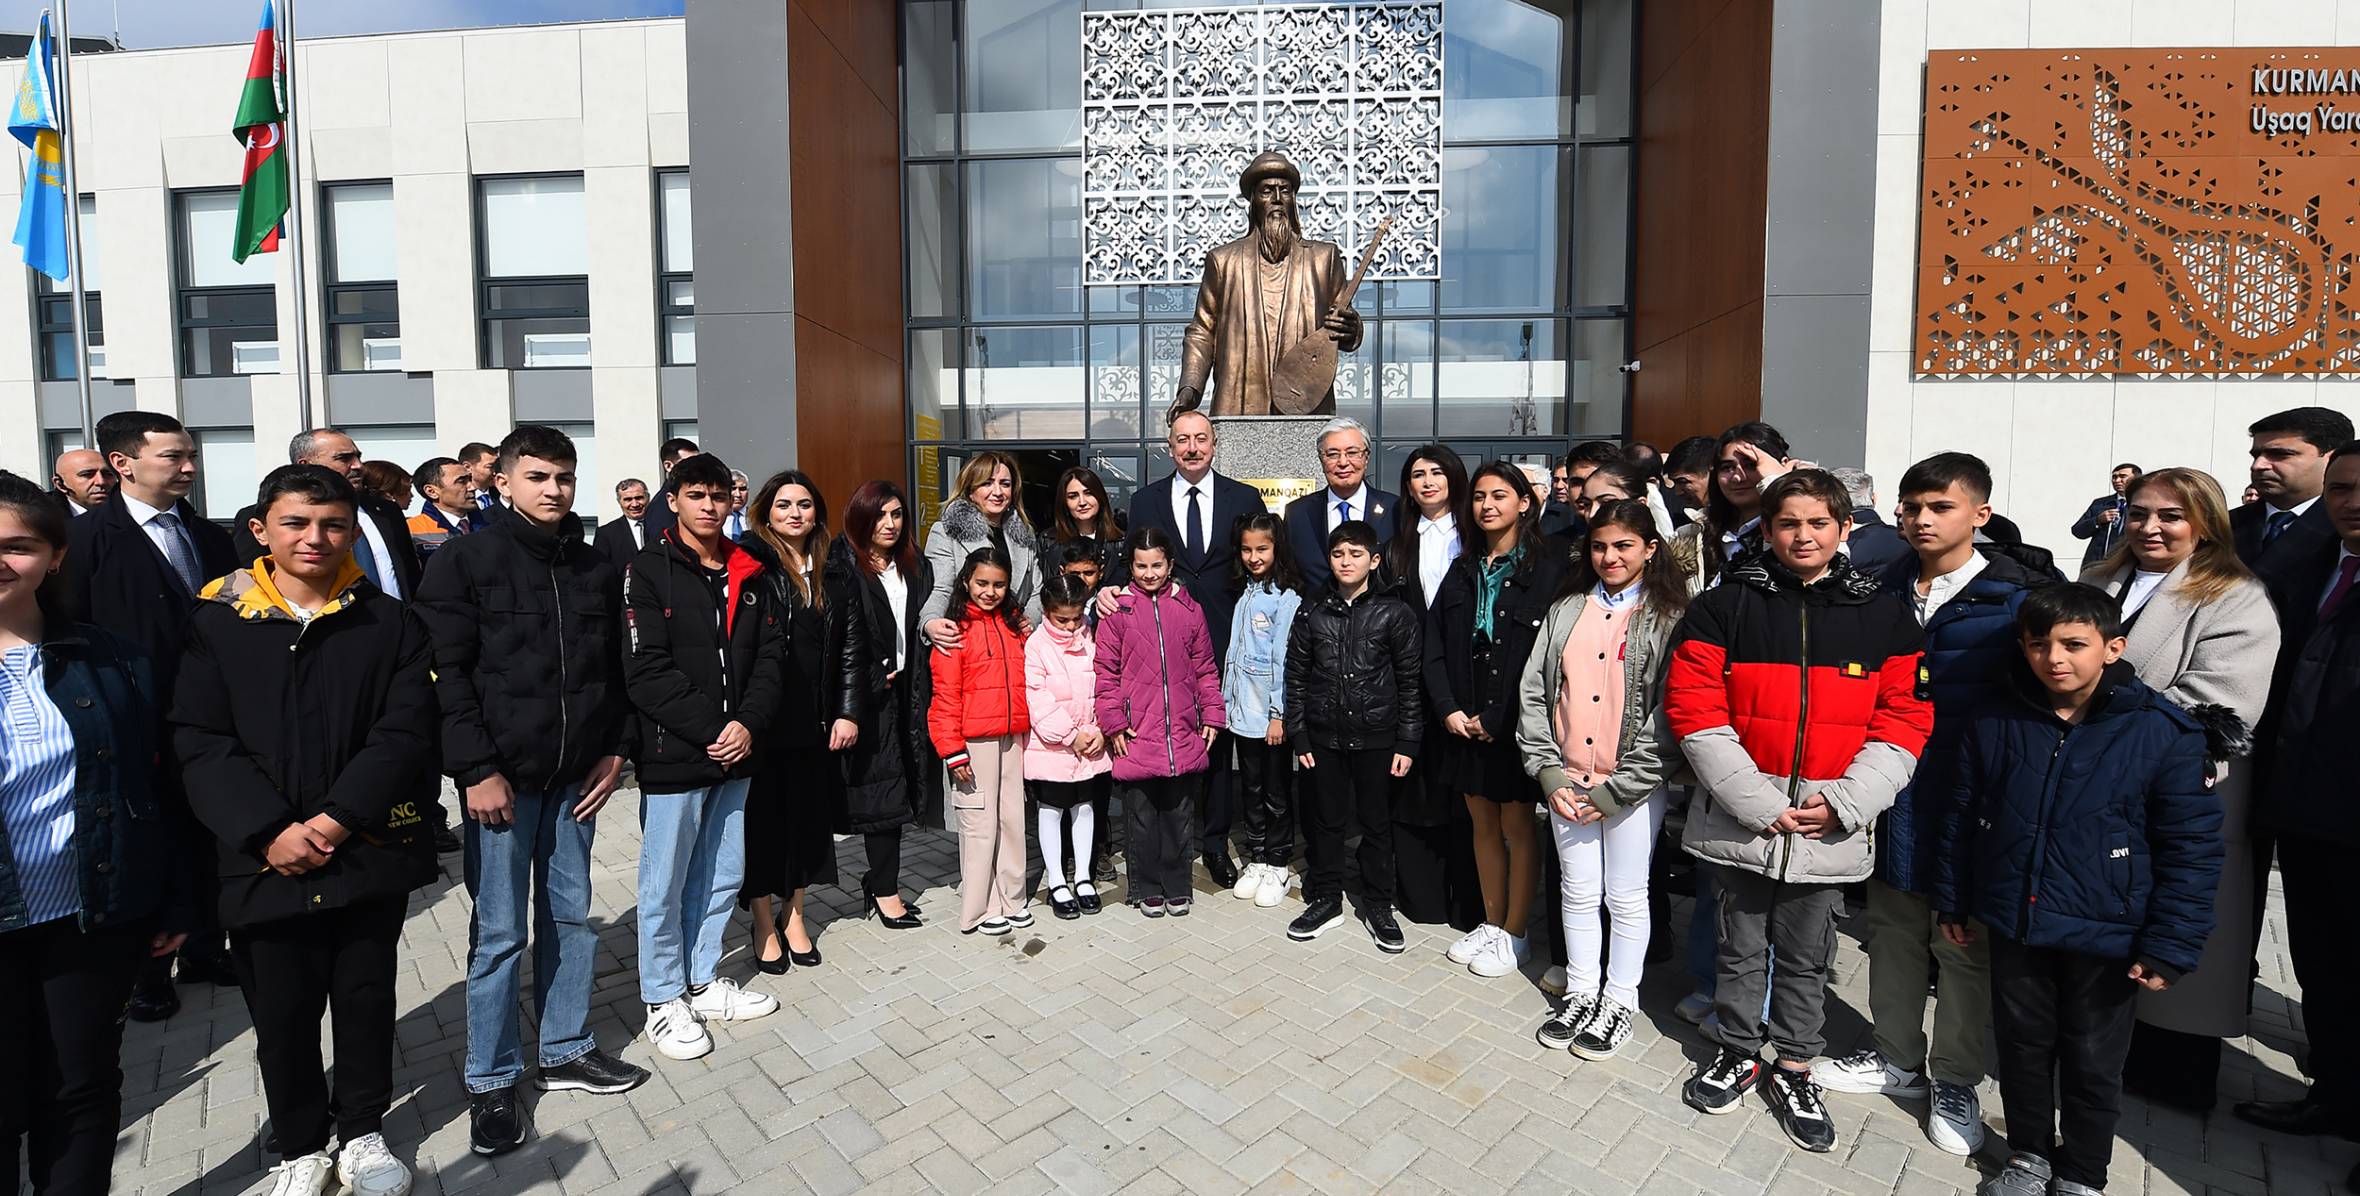 Президенты Азербайджана и Казахстана приняли участие в церемонии открытия Центра детского творчества имени Курмангазы в Физули